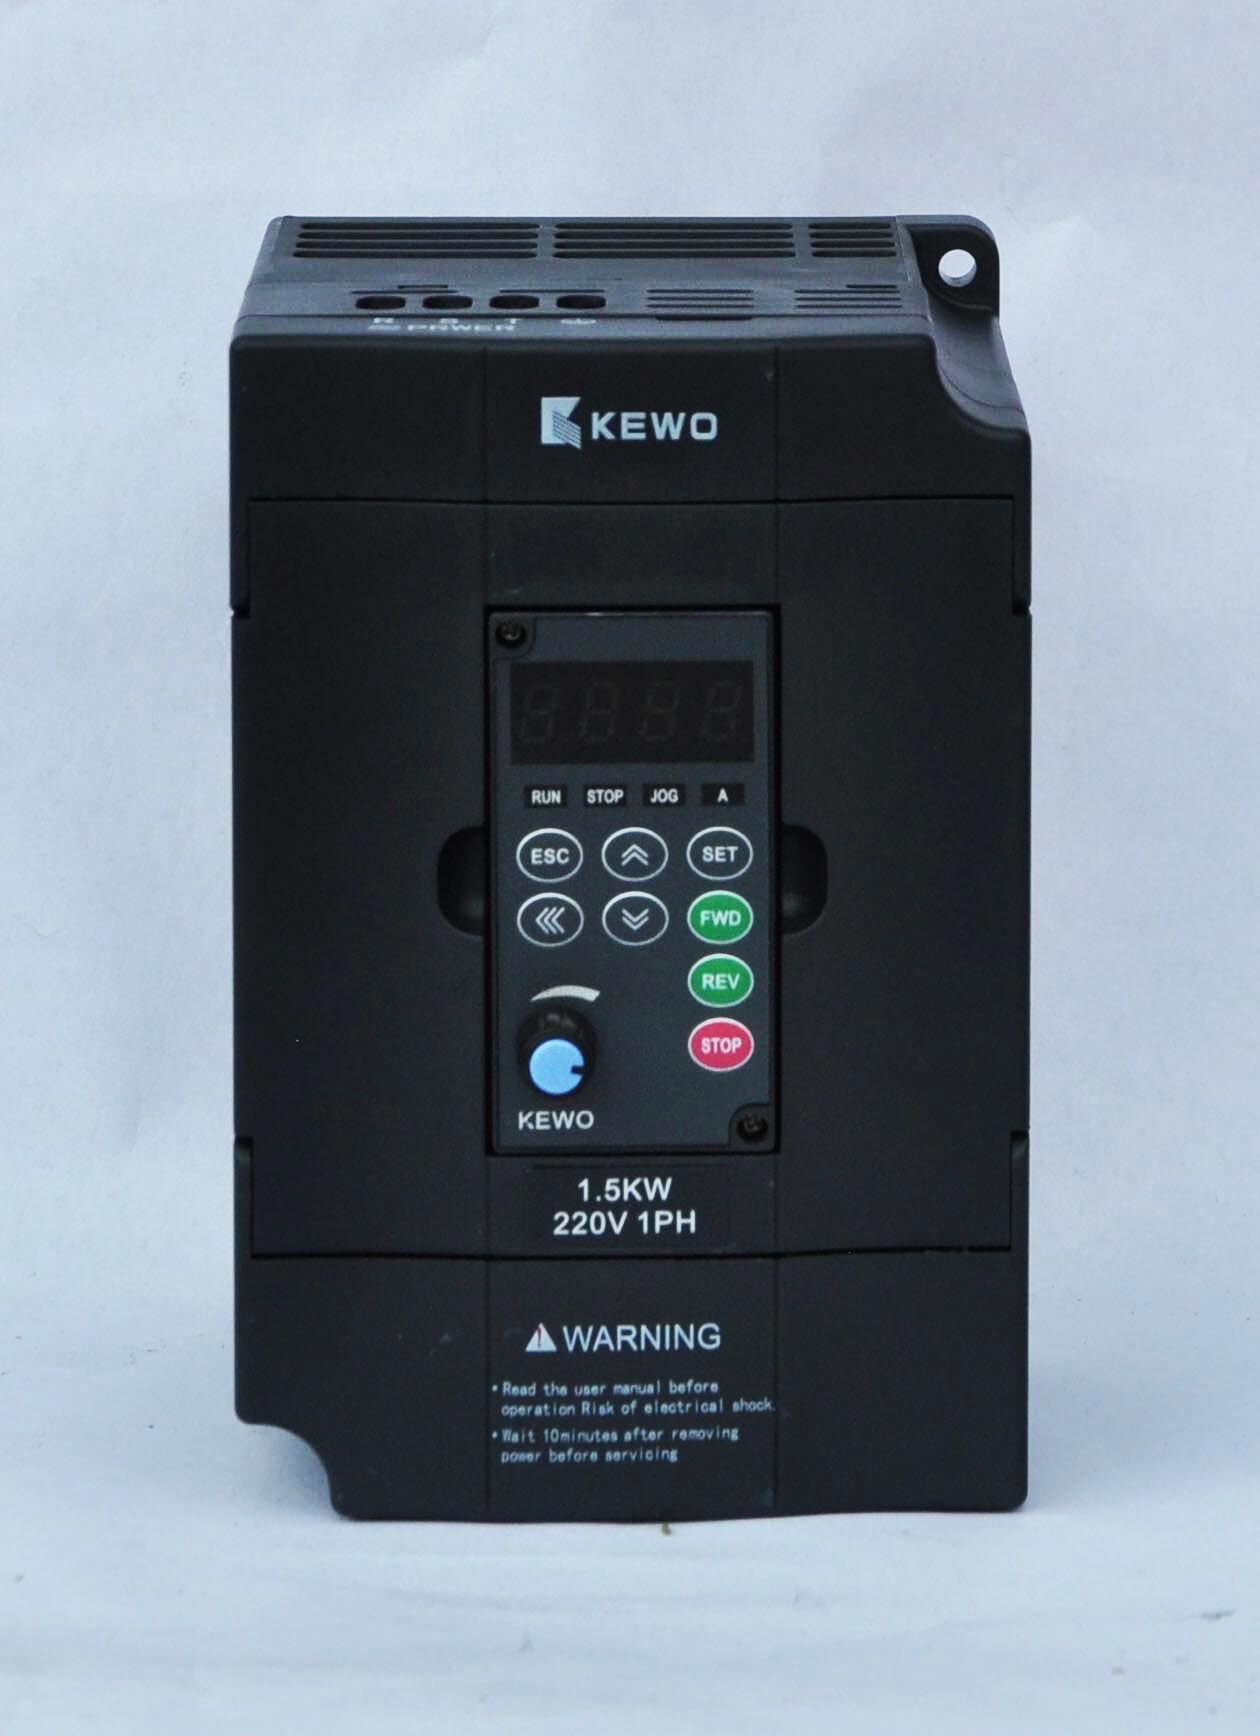 Kewo inverter 1.5kw สำหรับเครื่องผลิตถุงพลาสติก